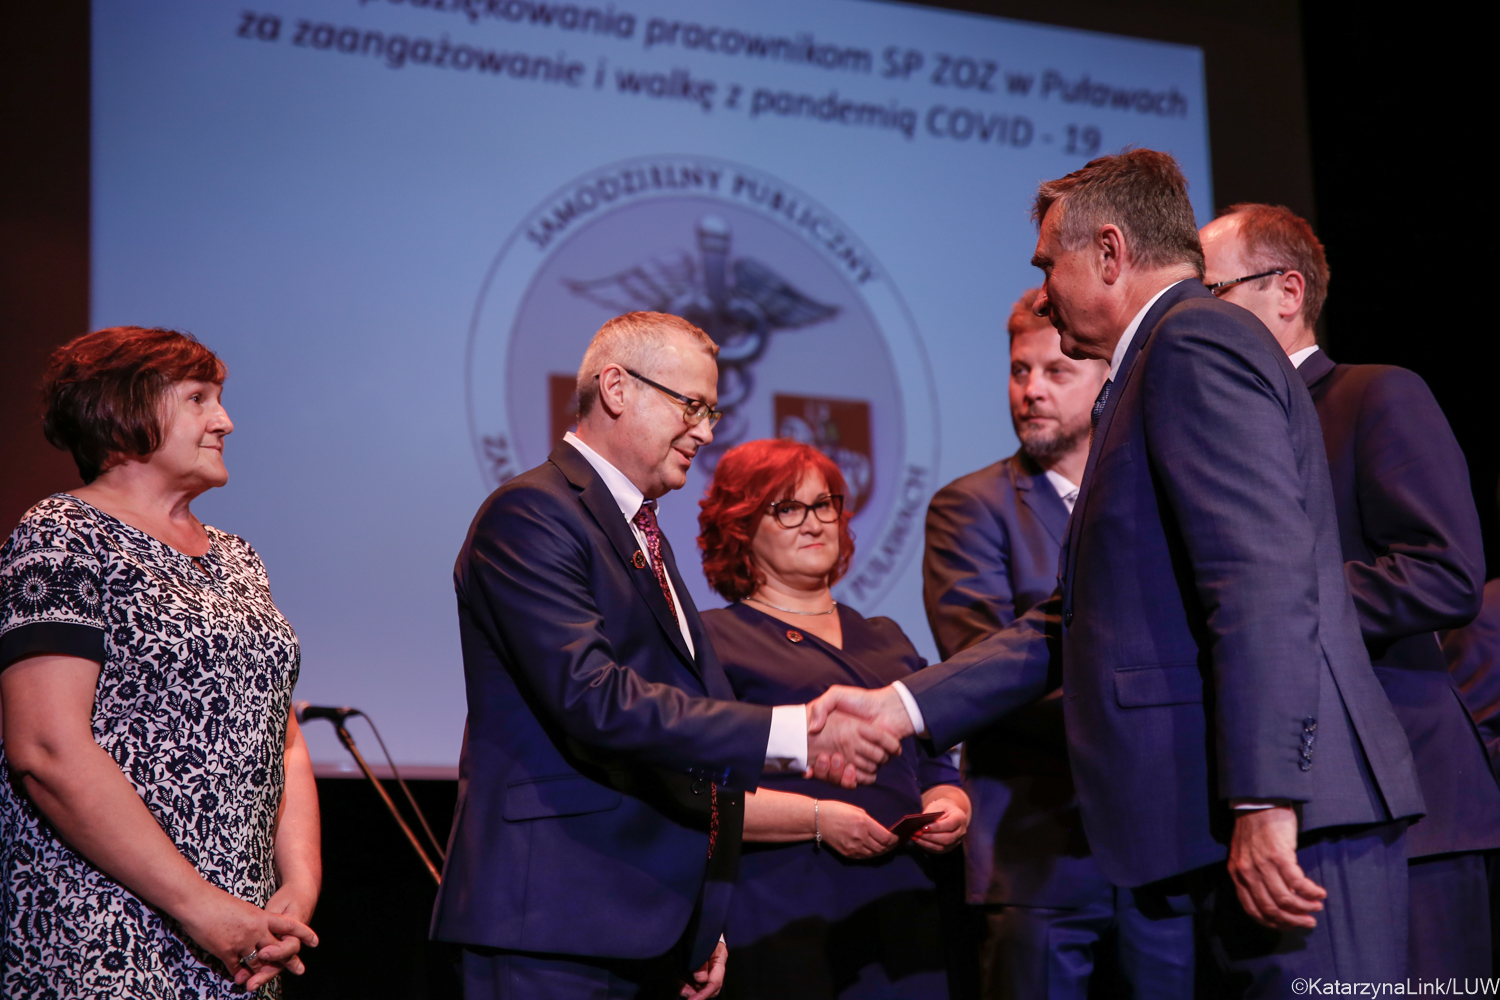 Odznaki za Zasługi dla Ochrony Zdrowia dla pracowników szpitala w Puławach. Za walkę z pandemią